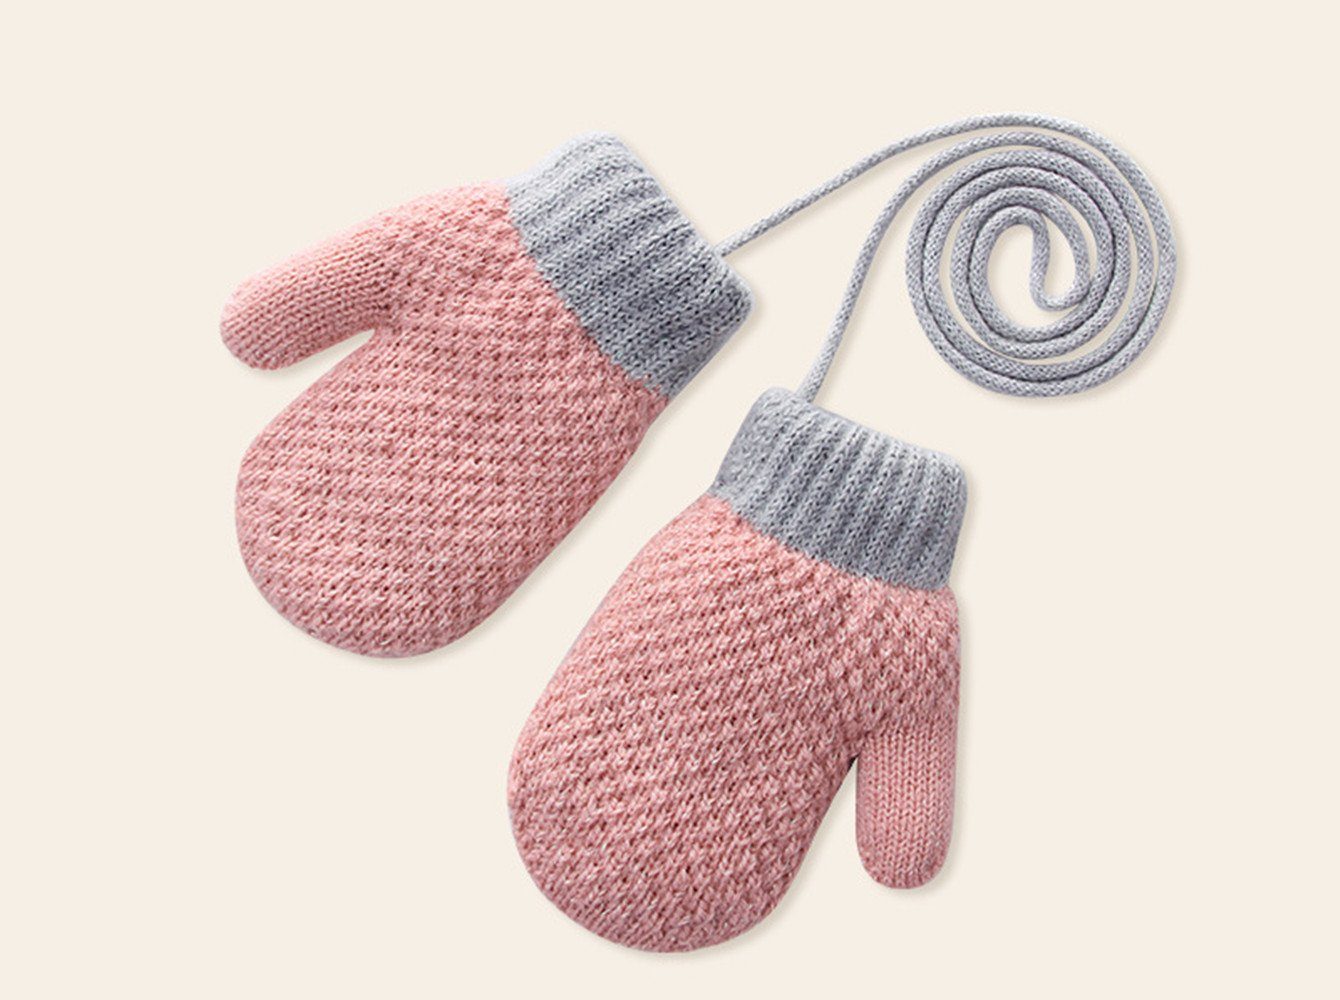 XDeer Fäustlinge Baby Handschuhe, Fäustlinge Kinder Winterhandschuhe Warm Strickhandschuhe mit Schlüsselband für 1-3 Jahre Mädchen Junge pink